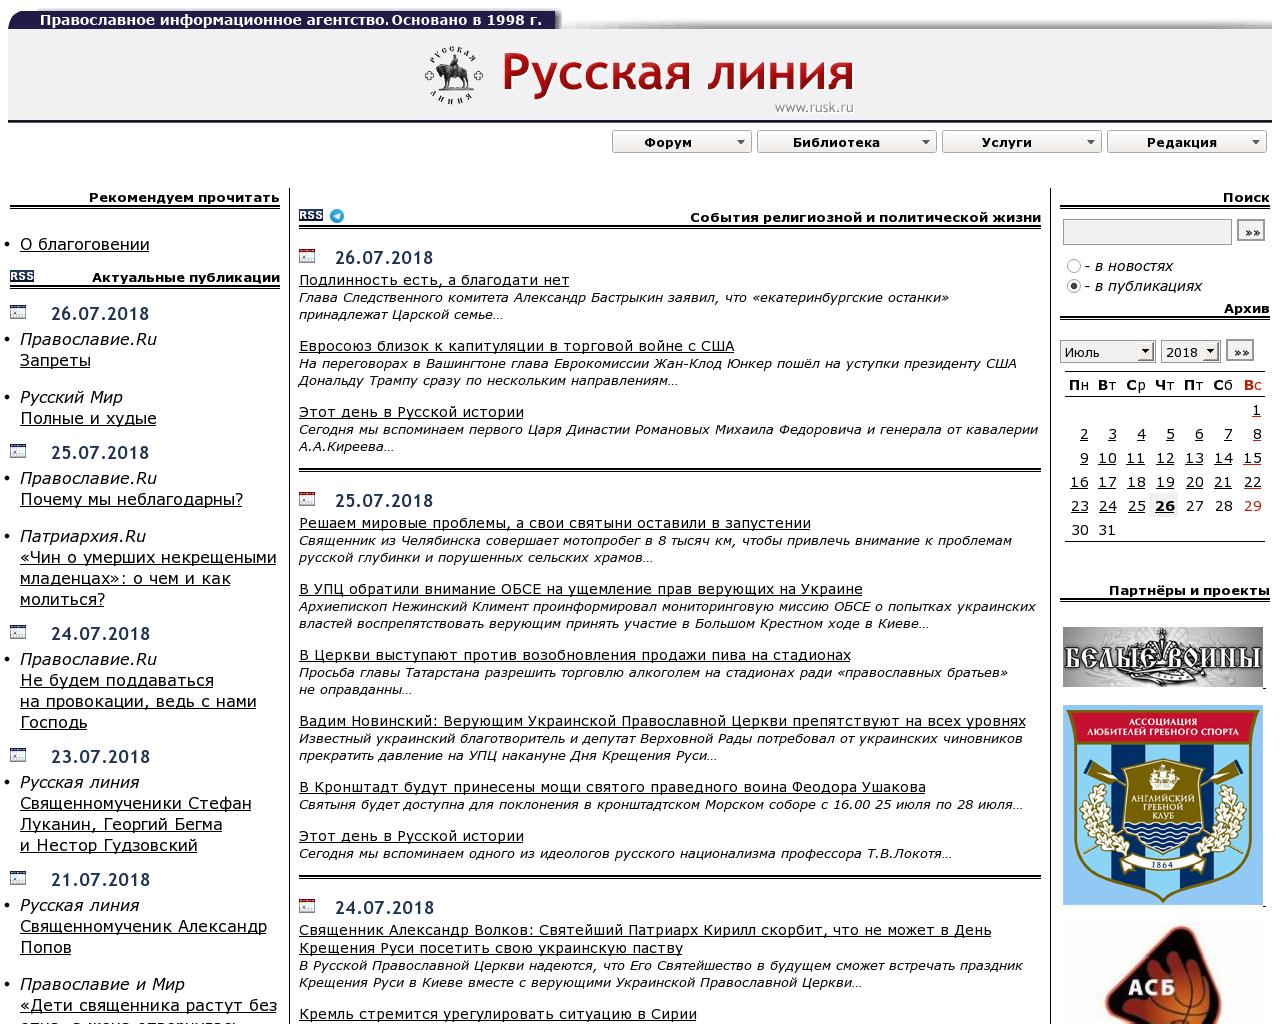 Изображение сайта rusk.ru в разрешении 1280x1024